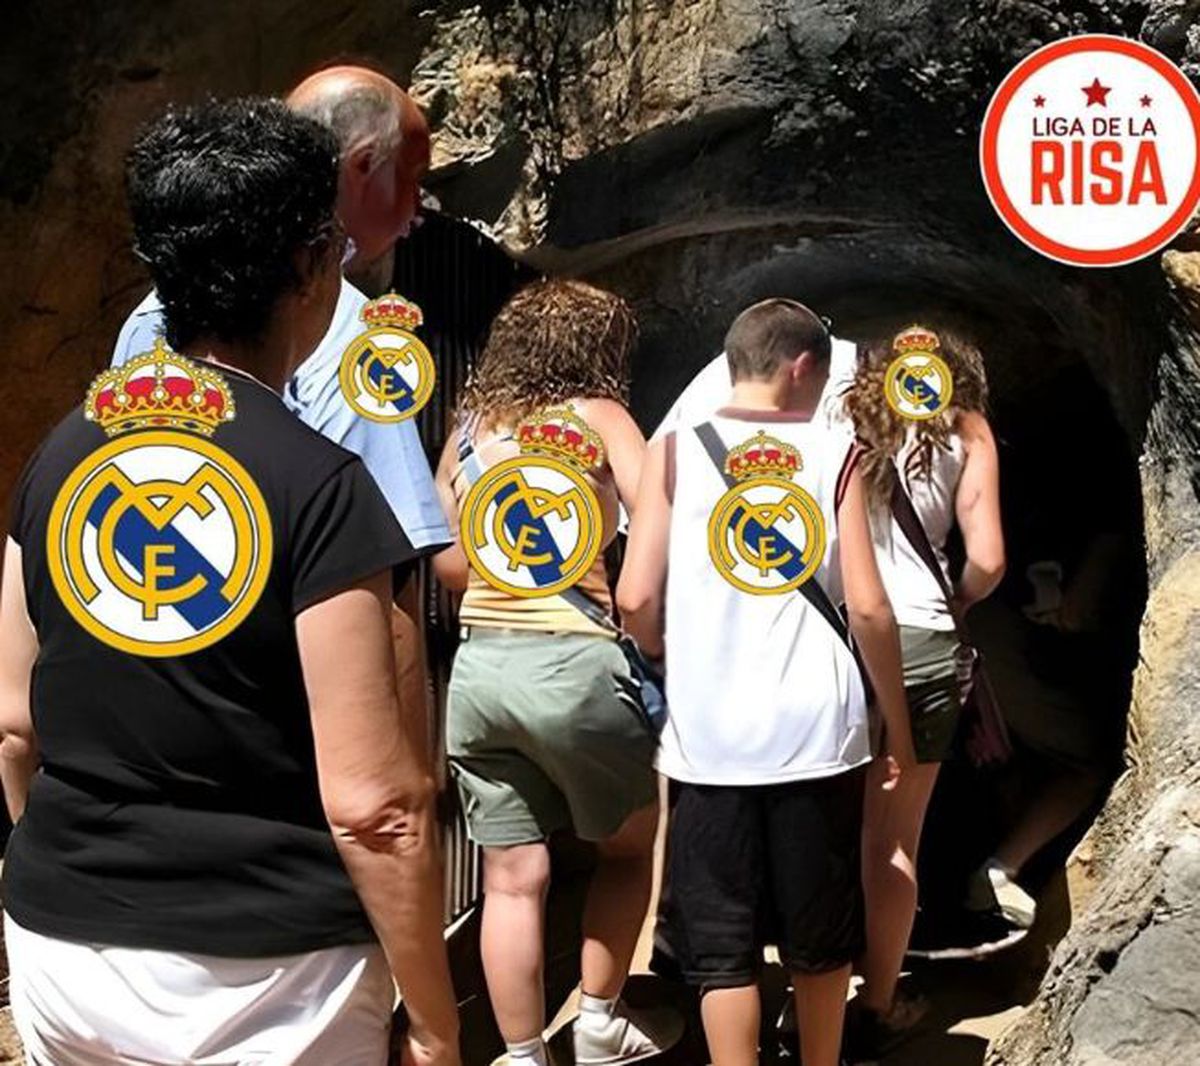 Real Madrid - Barcelona. Cele mai bune meme-uri